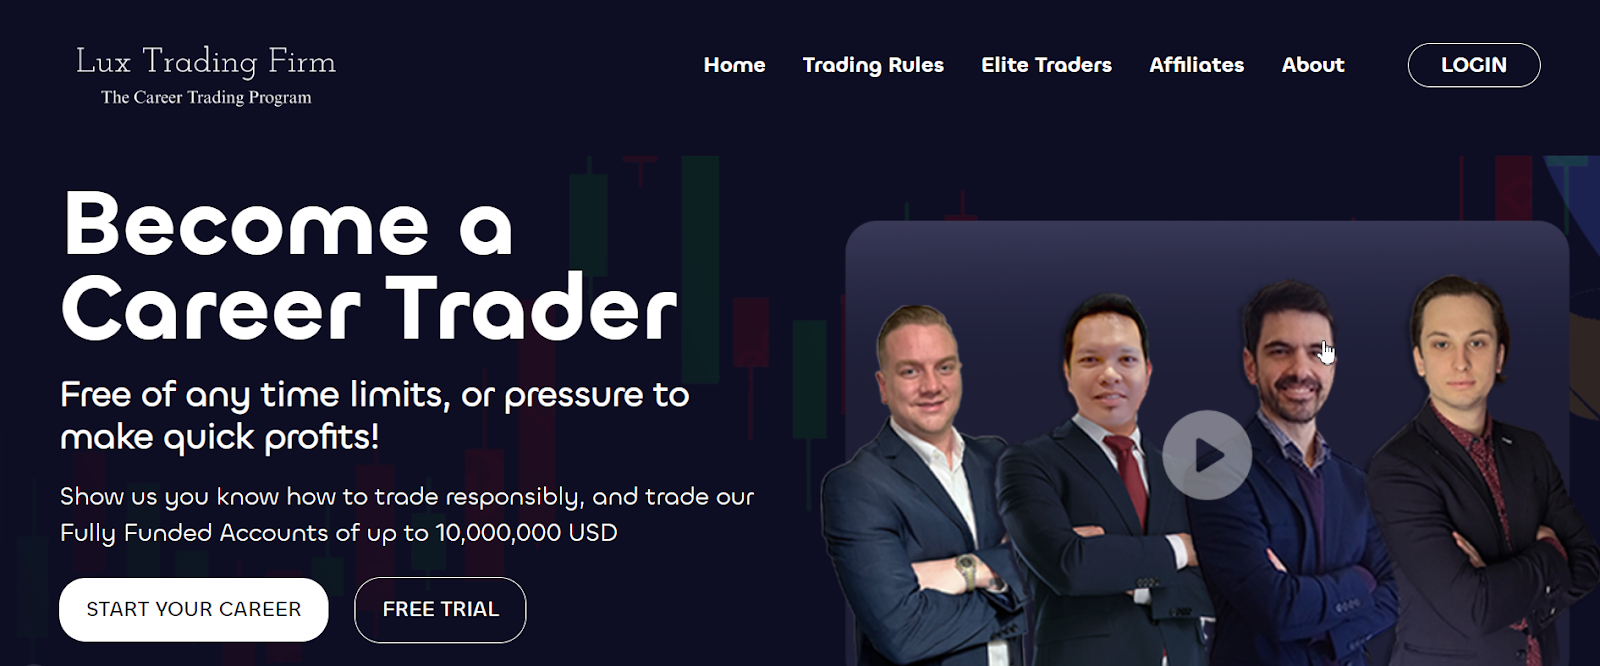 Anmeldelse af Lux Trading Firm - Gratis prøveversion